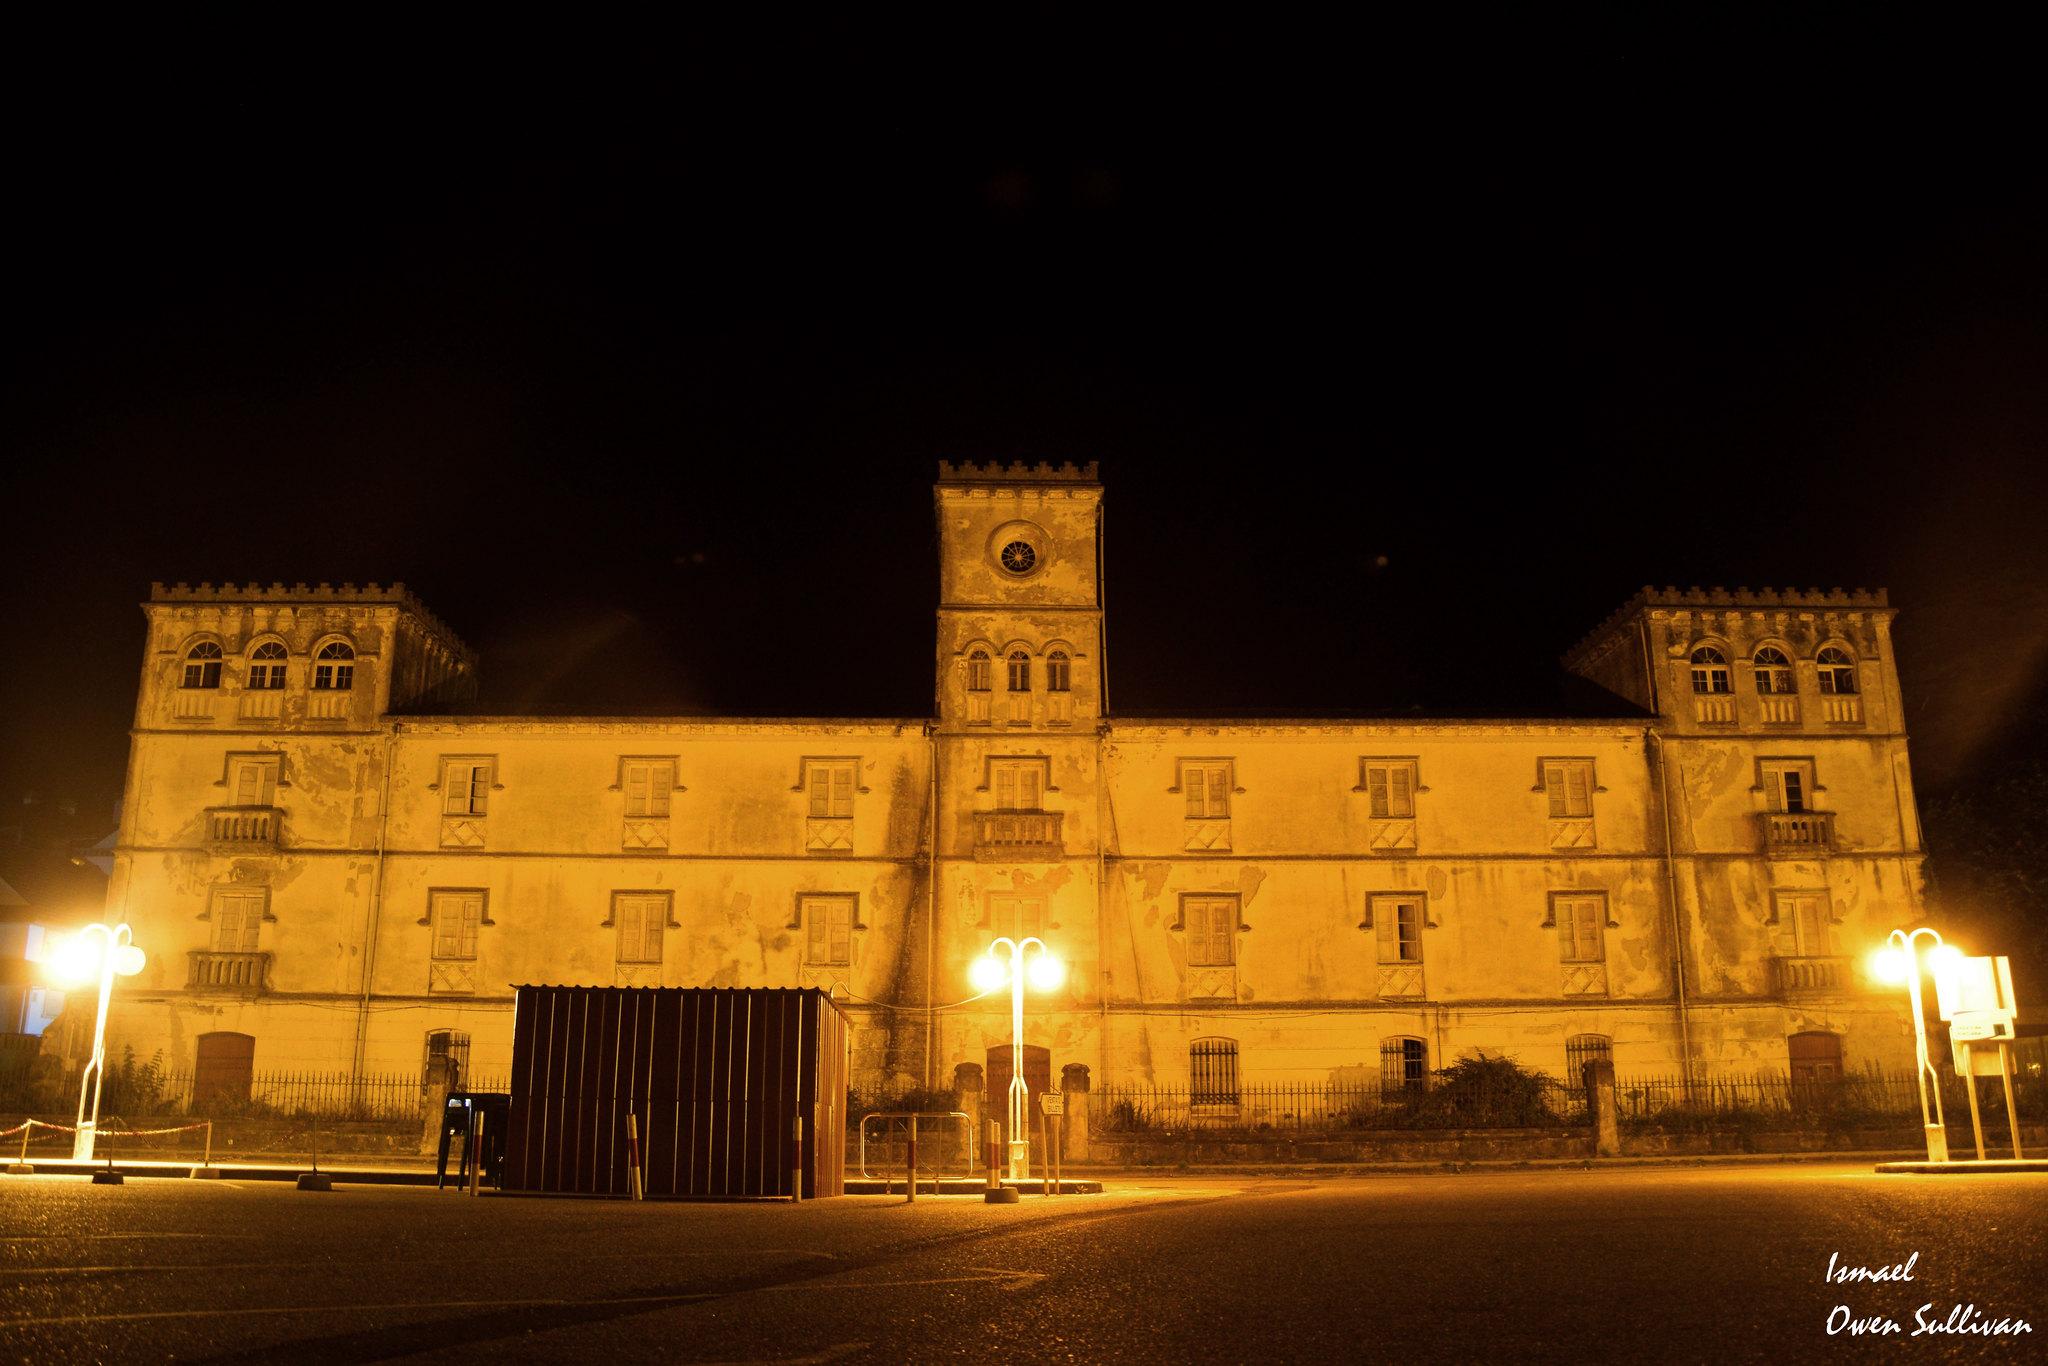 Colegio Jesuita de Camposancos en A Guarda (Pontevedra). Foto de Owen Sullivan